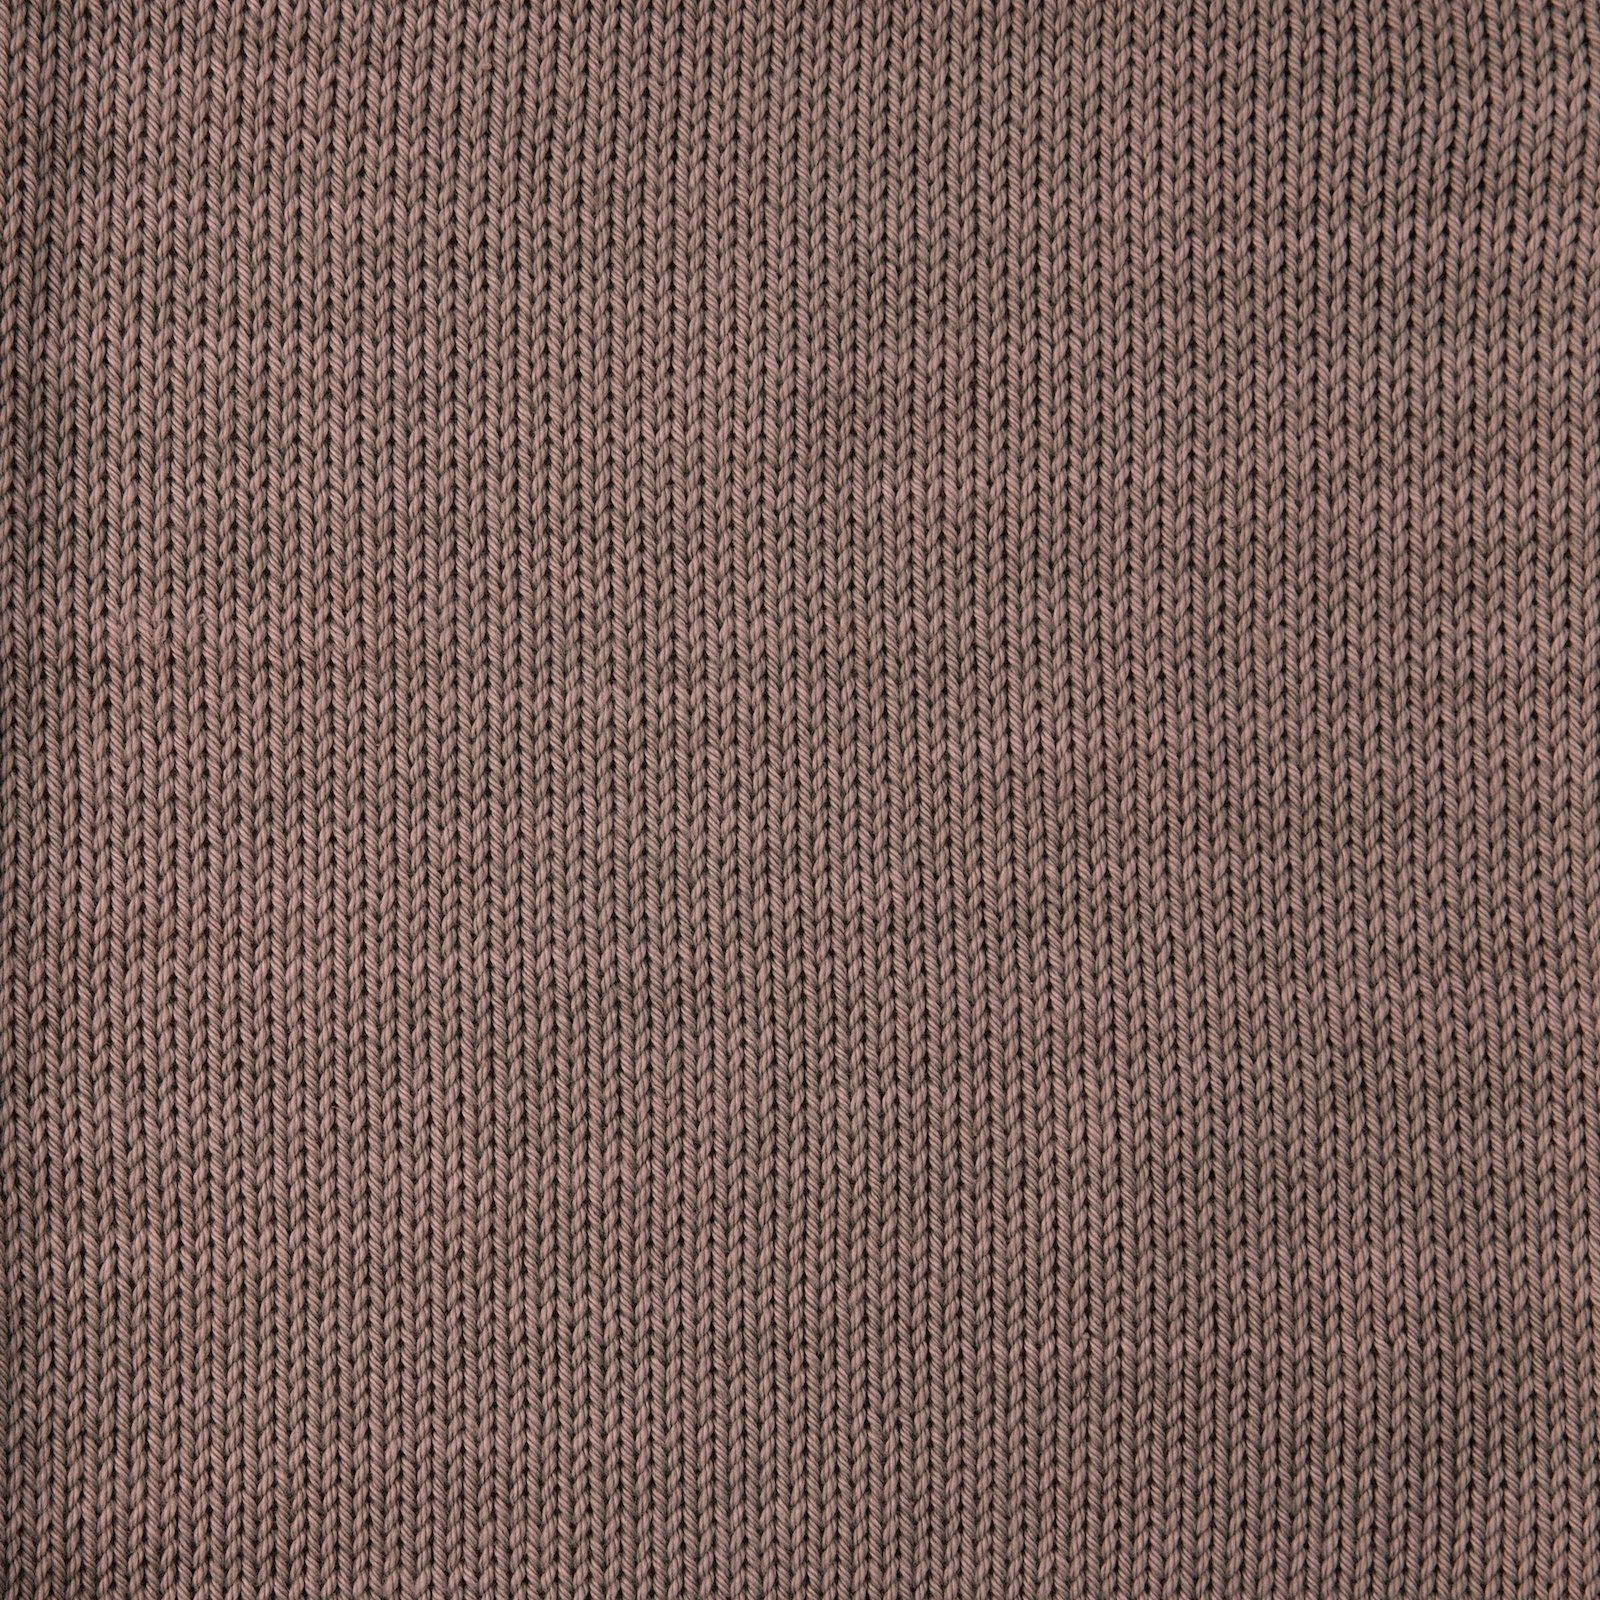 FRAYA, 100% cotton 8/4  yarn  "Colourful", mocca 90060031_sskit